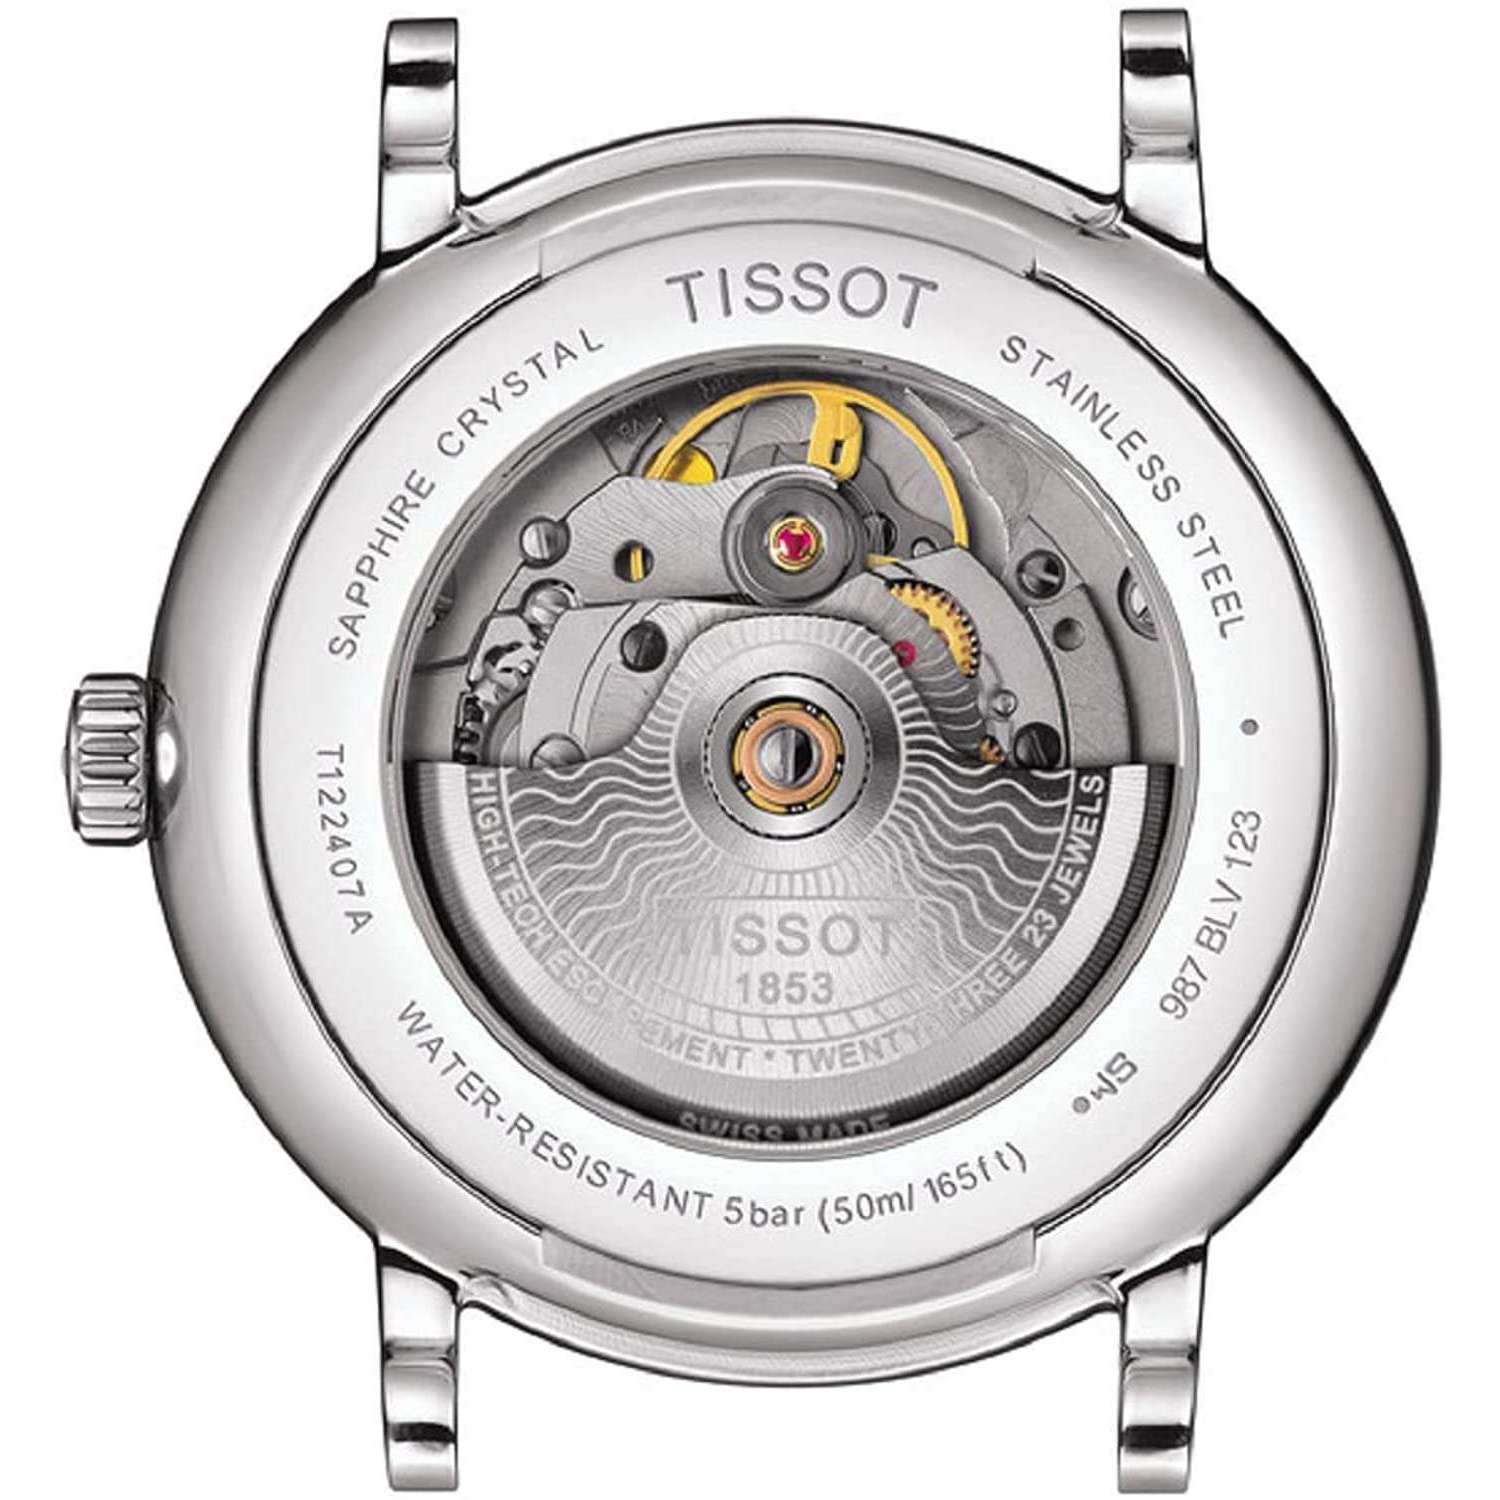 ROOK JAPAN:TISSOT CARSON PREMIUM POWERMATIC 80 AUTOMATIC 40 MM MEN WATCH T1224071105100,Luxury Watch,Tissot Carson